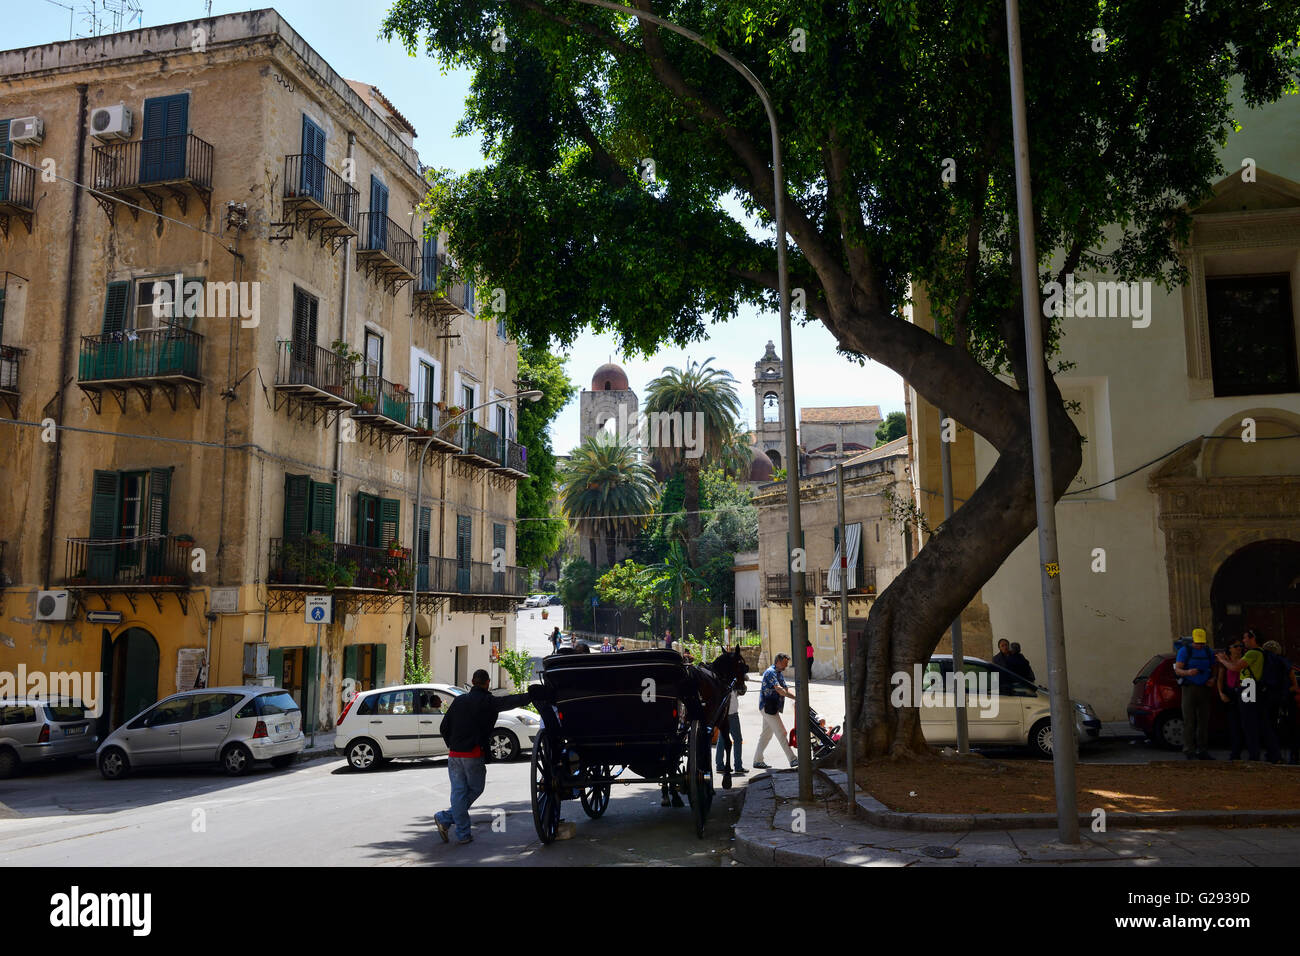 Street scene in Palermo, Sicily, Italy Stock Photo